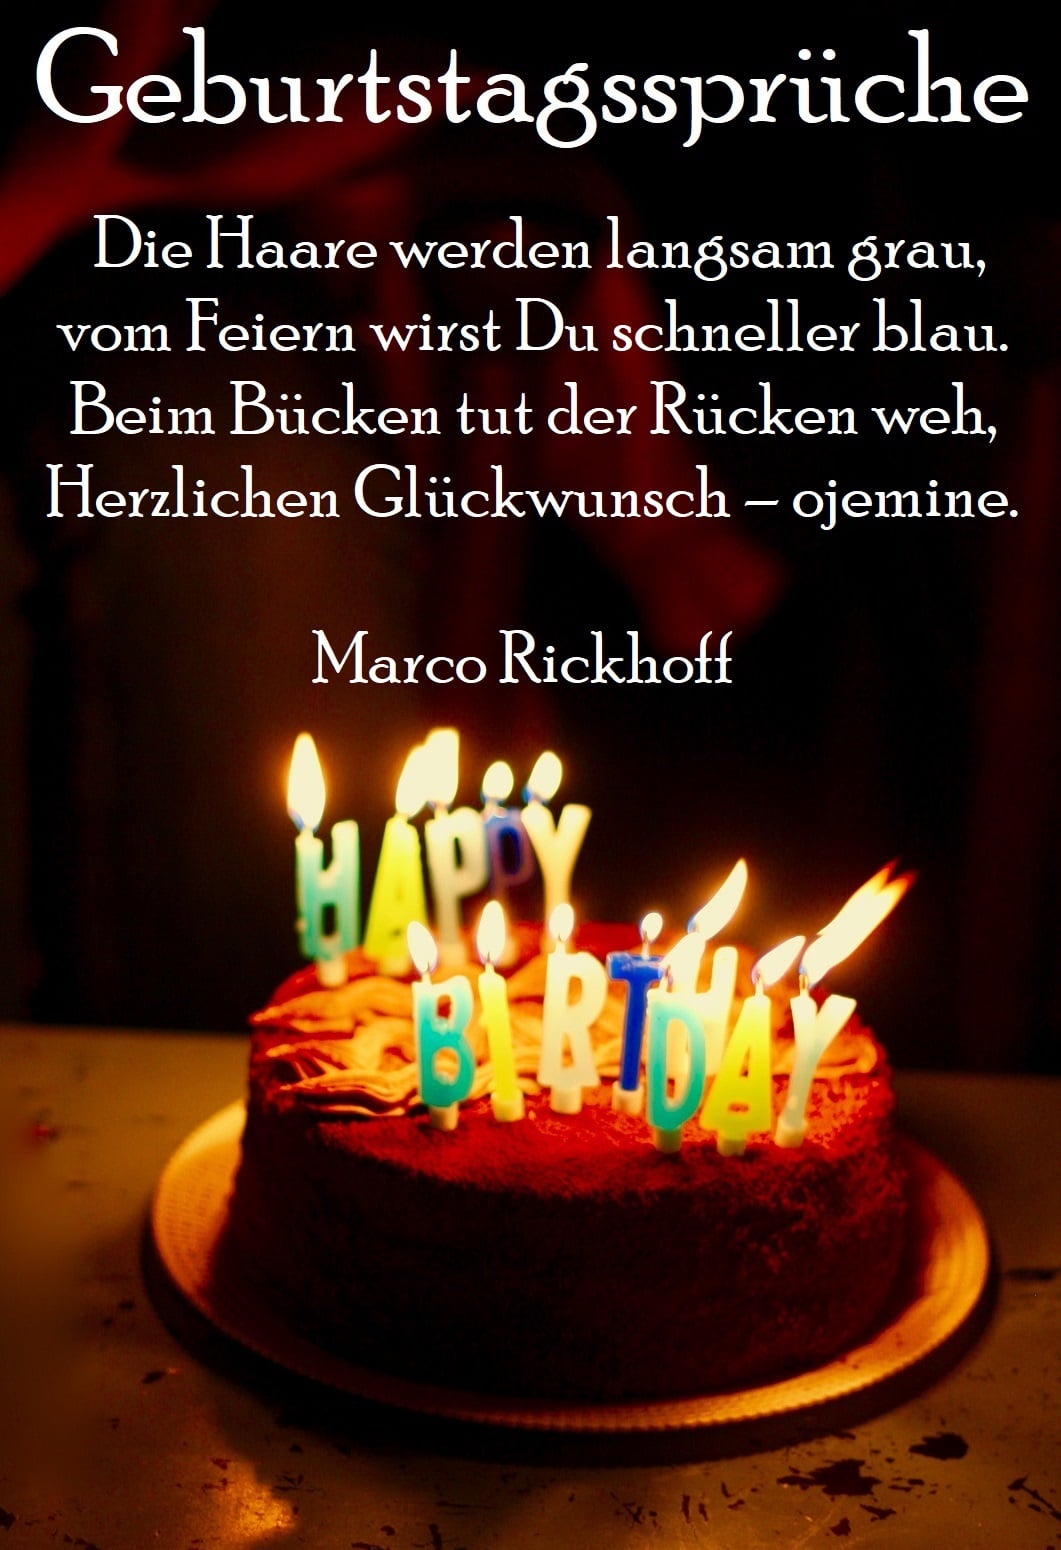 Geburtstagsspruche Texte Zitate Spruche Zum Geburtstag Nutzen